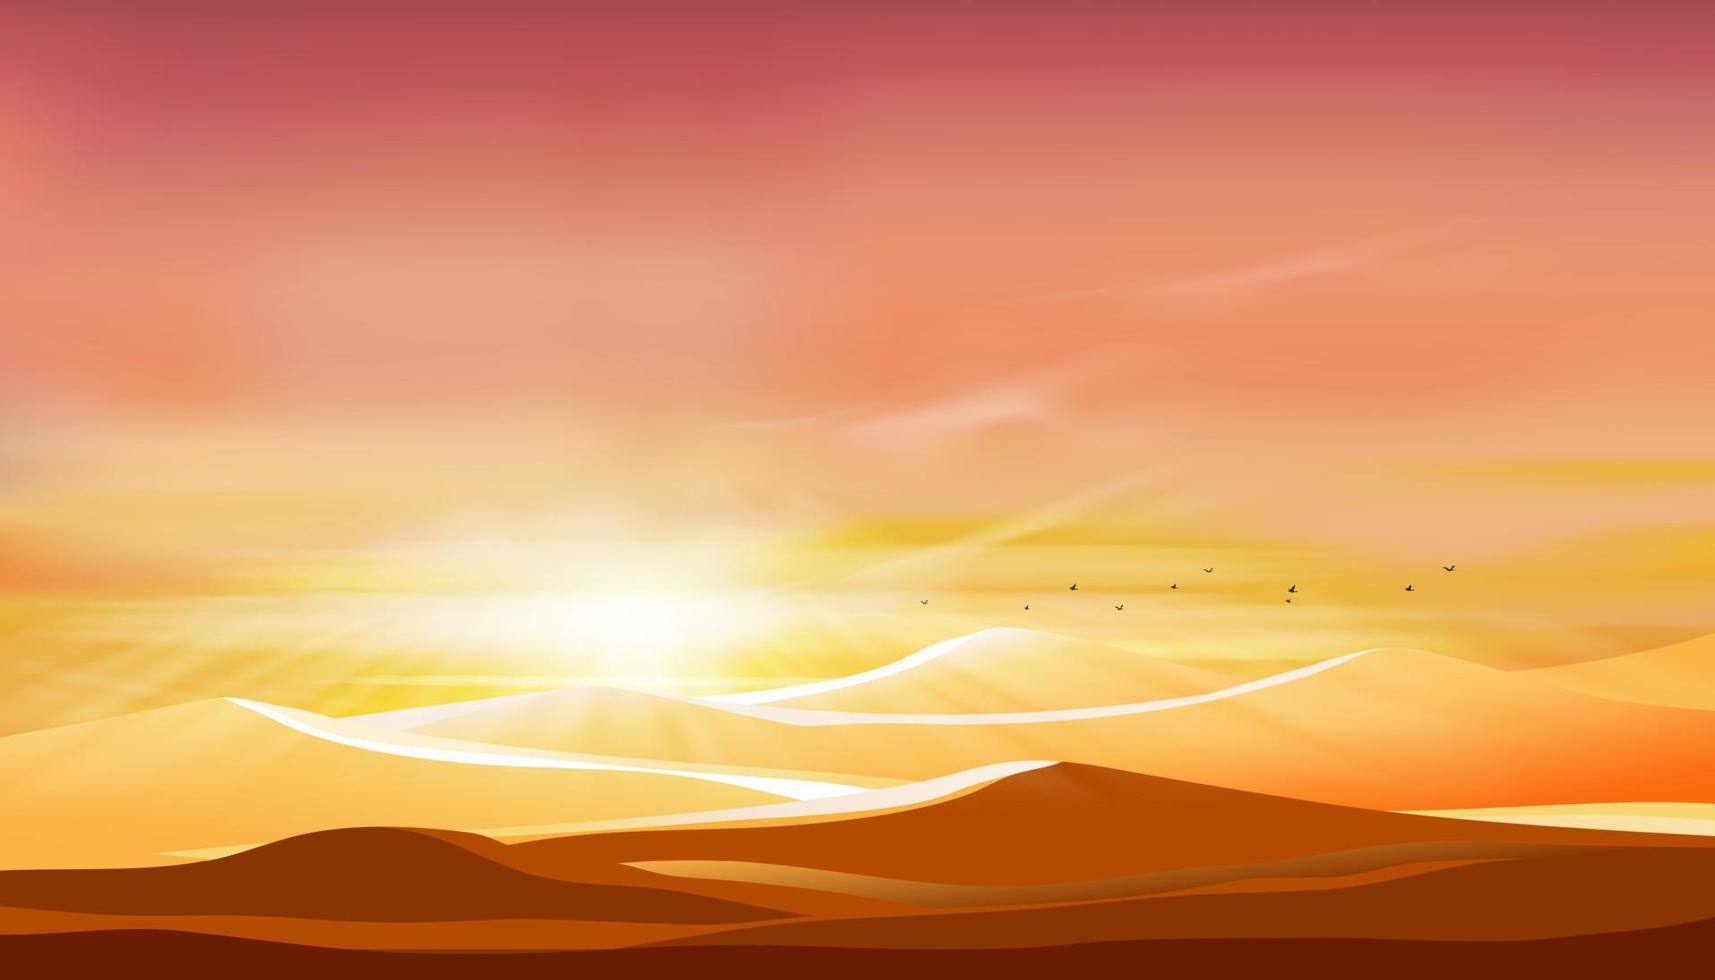 sonnenuntergang in der wüstenlandschaft mit sanddünen mit orangefarbenem himmel am abend, vektorillustration schöne natur mit sonnenaufgang am morgen, bannerhintergrund für den islam, muslim für eid mubarak, eid al fitr vektor